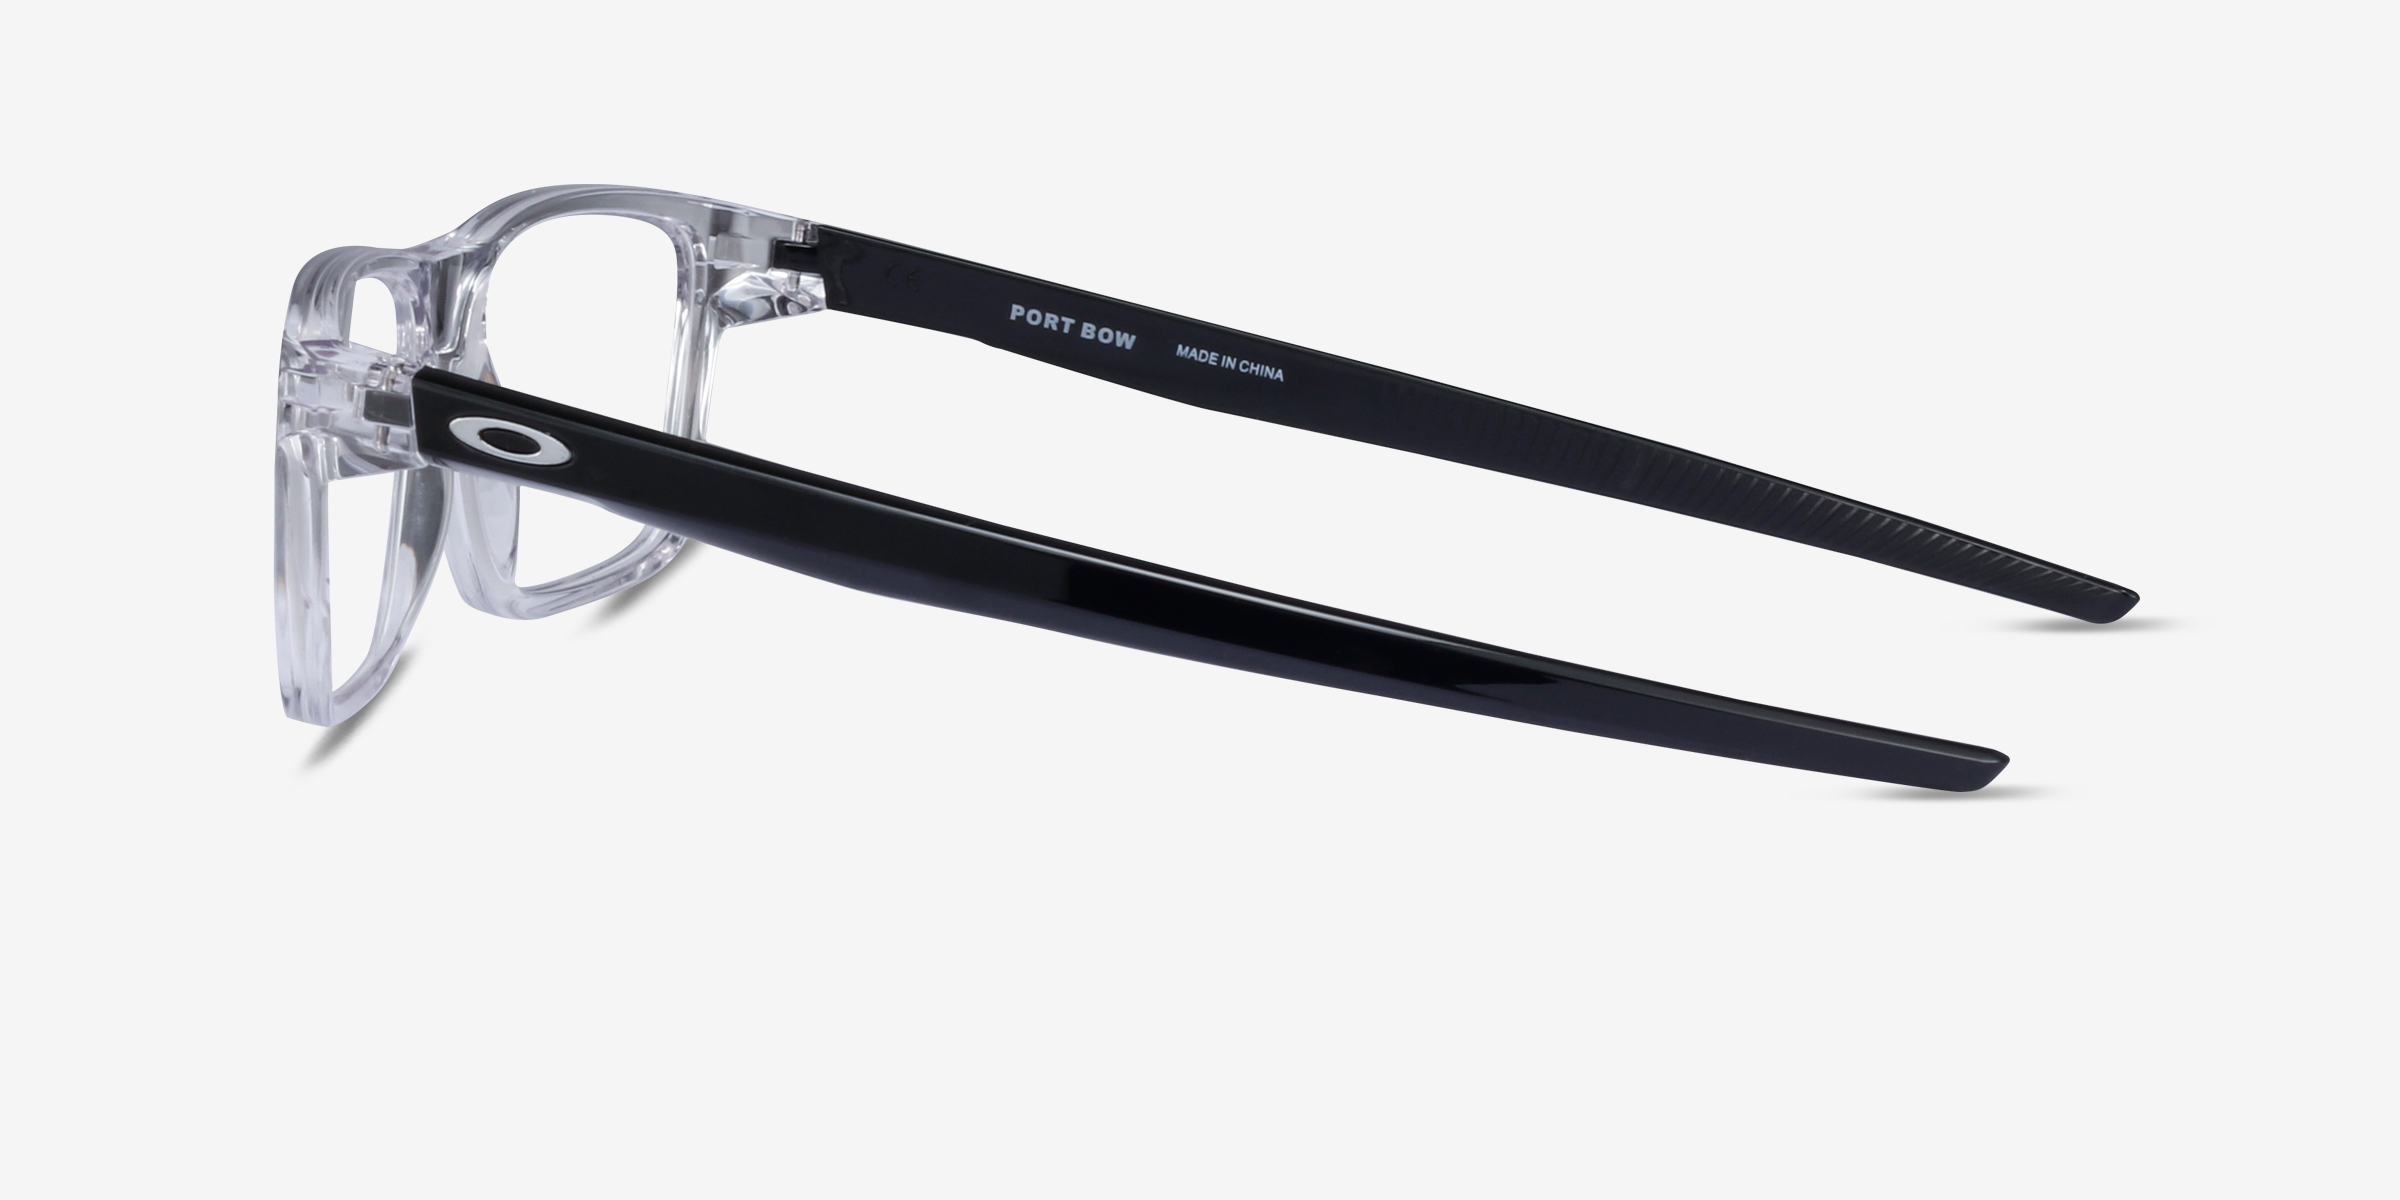 Oakley Port Bow - Rectangle Polished Clear Frame Glasses For Men ...